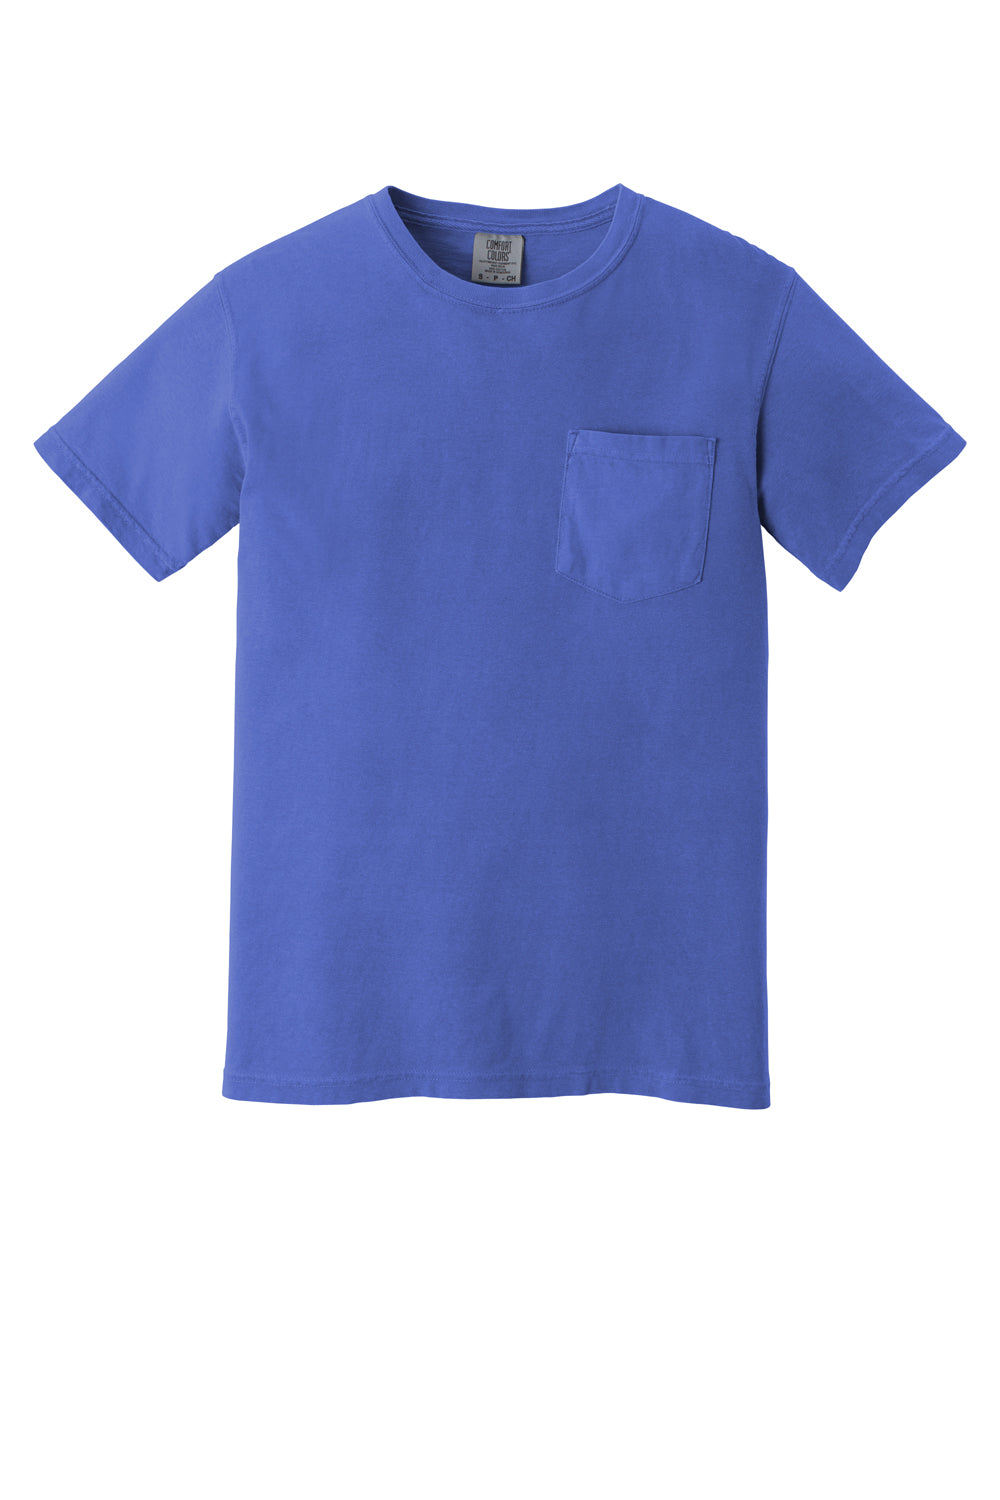 Comfort Colors Mens Short Sleeve Crewneck T-Shirt w/ Pocket Mystic Blue Flat Front